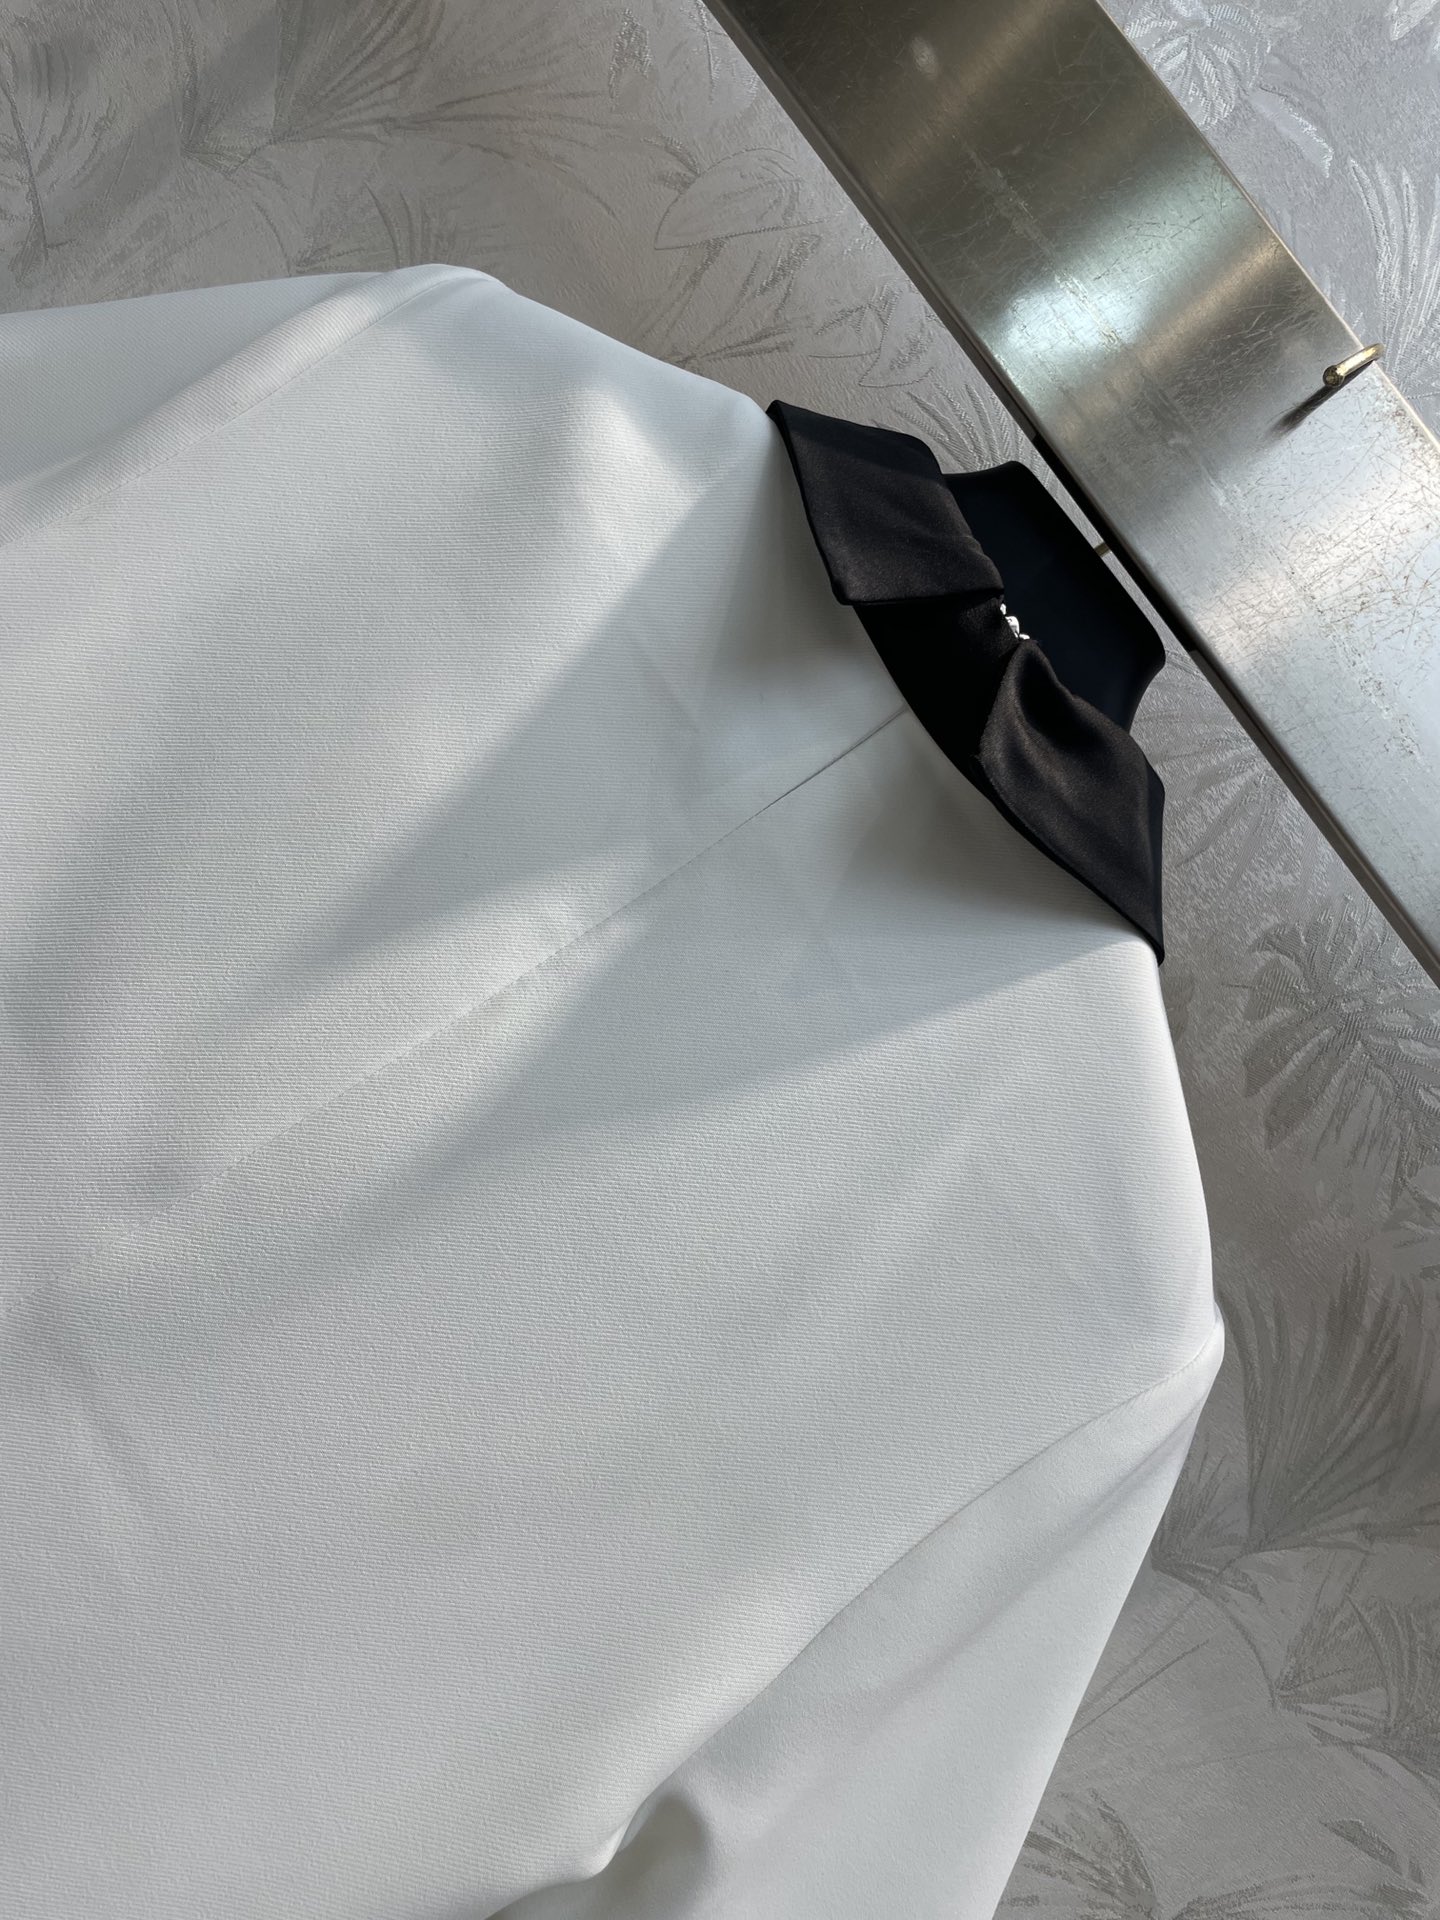 V家24春夏黑白拼色领带连衣裙V字扣领带的搭配拼色翻领设计短袖直筒版型藏肉显瘦又百搭经典黑白色搭配非常减